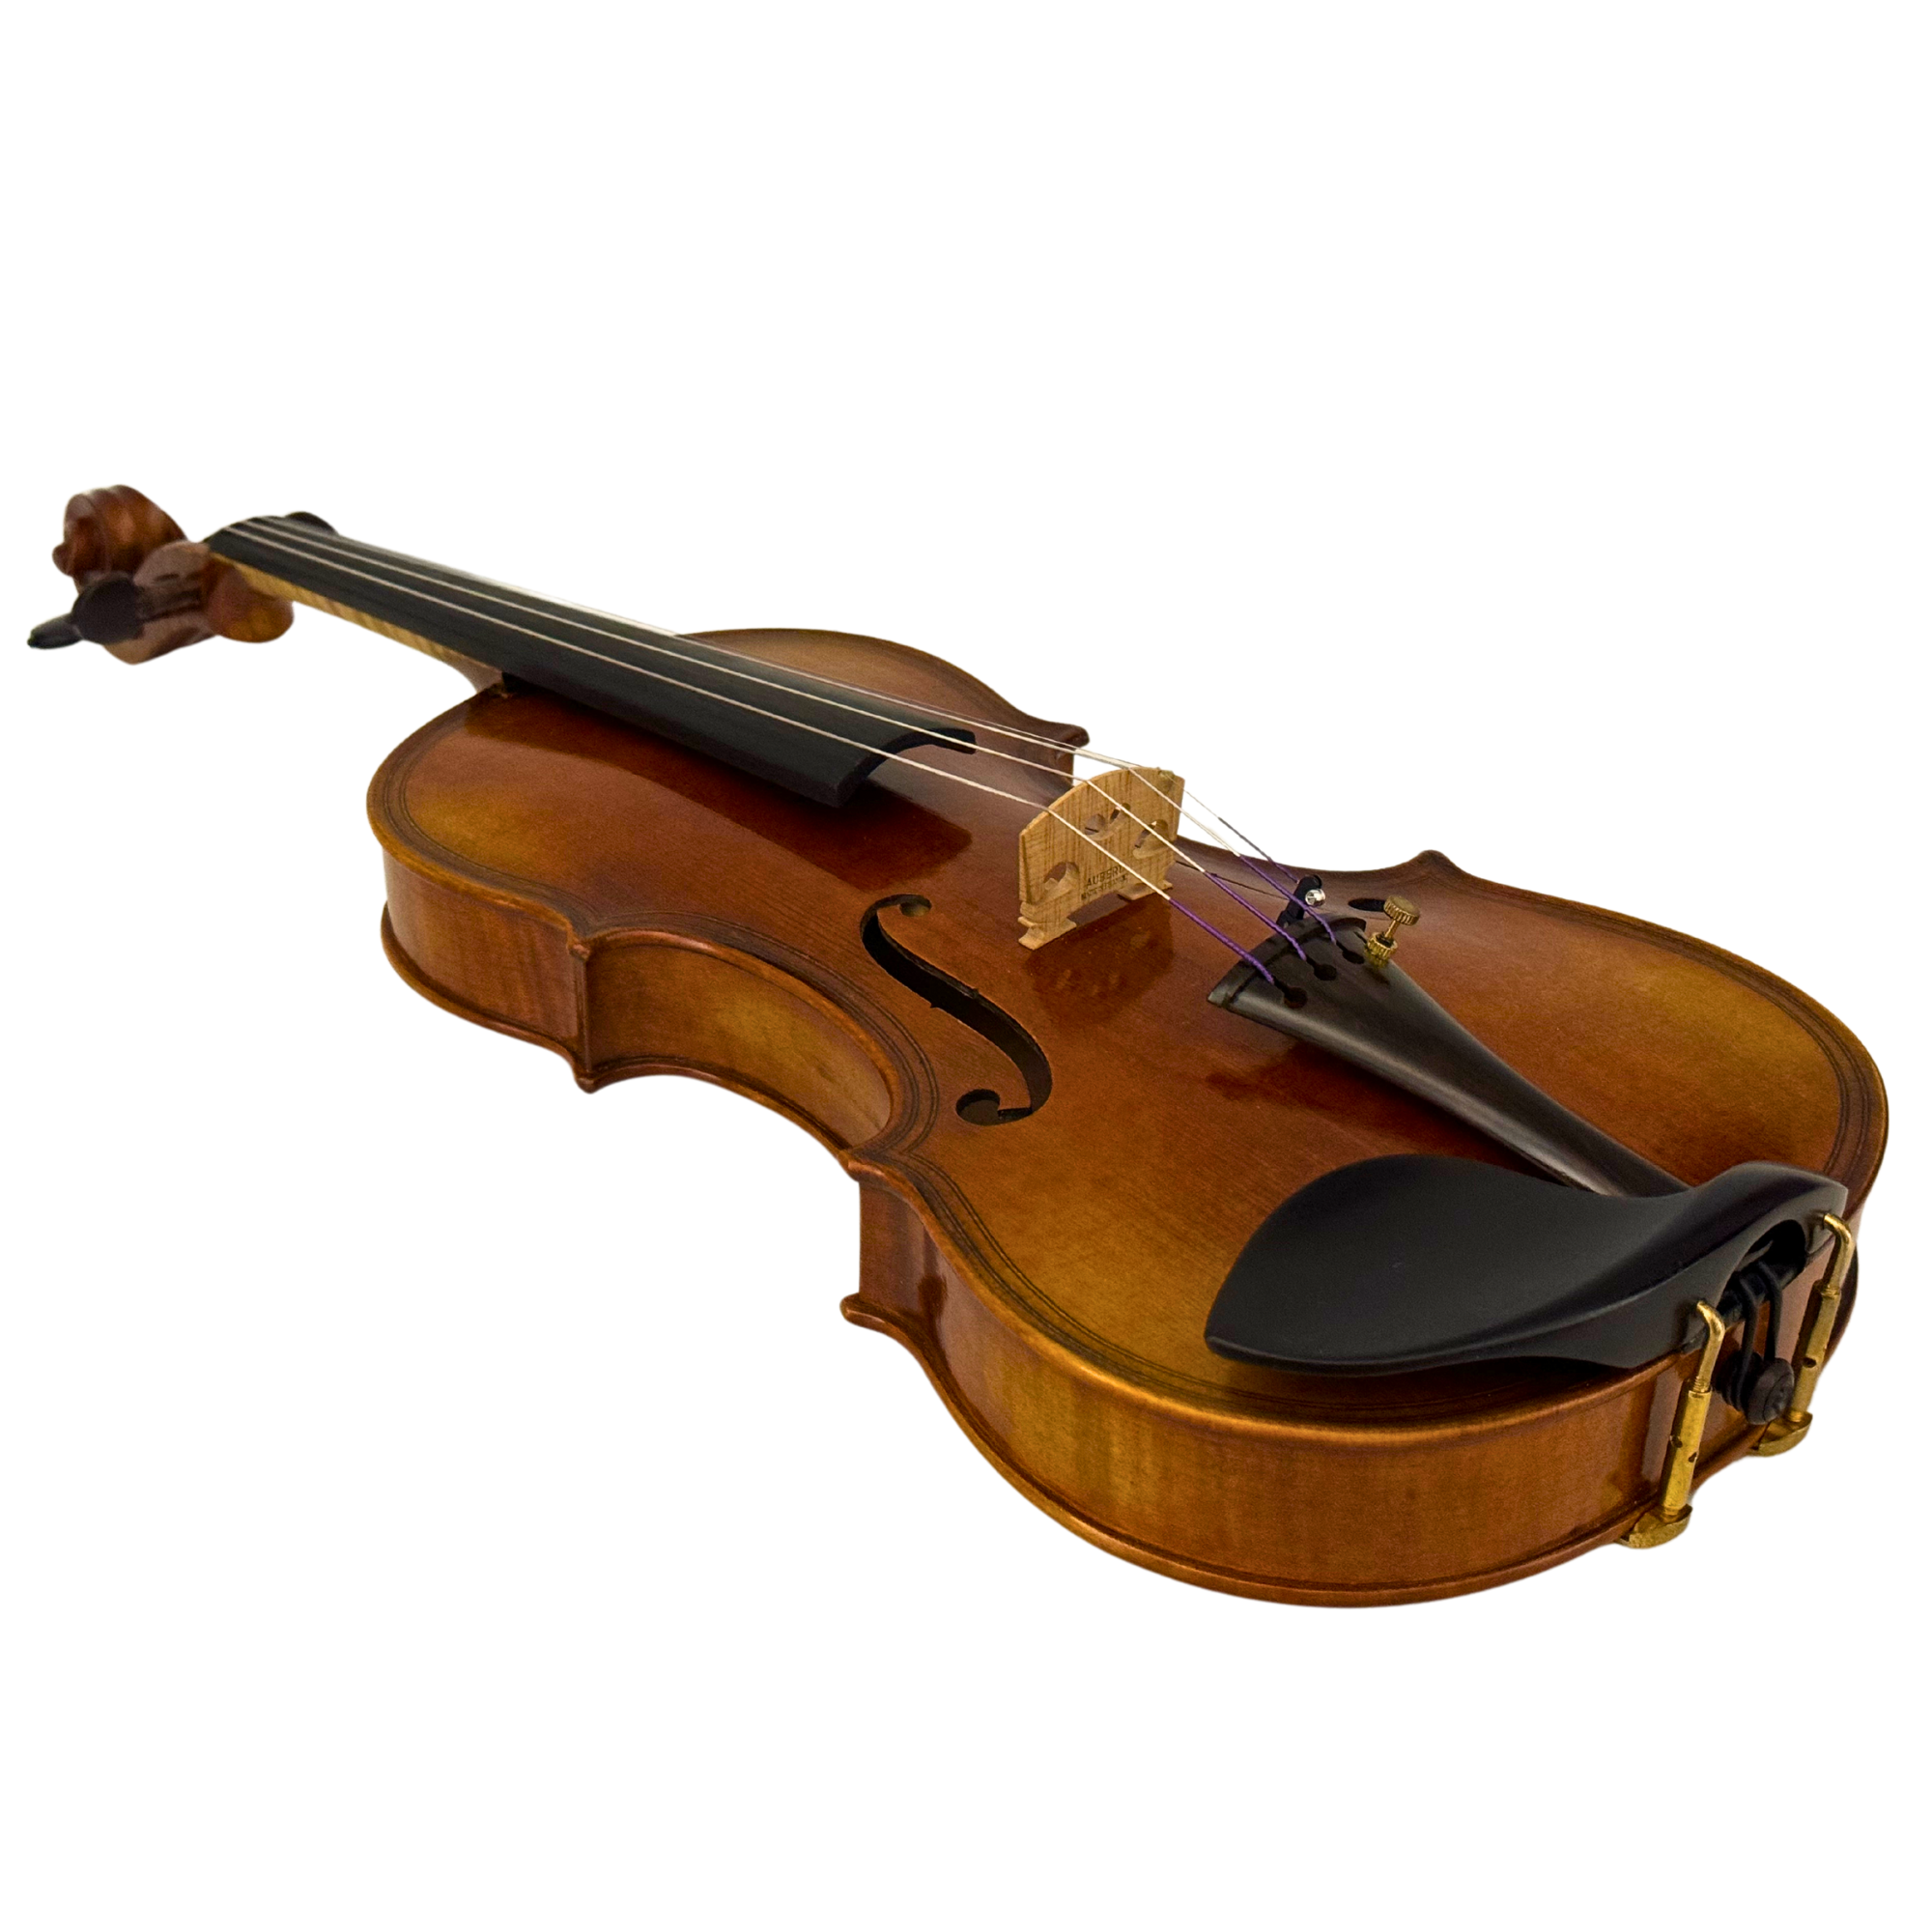 ZS Strings Maggini Model Violin 012 in action